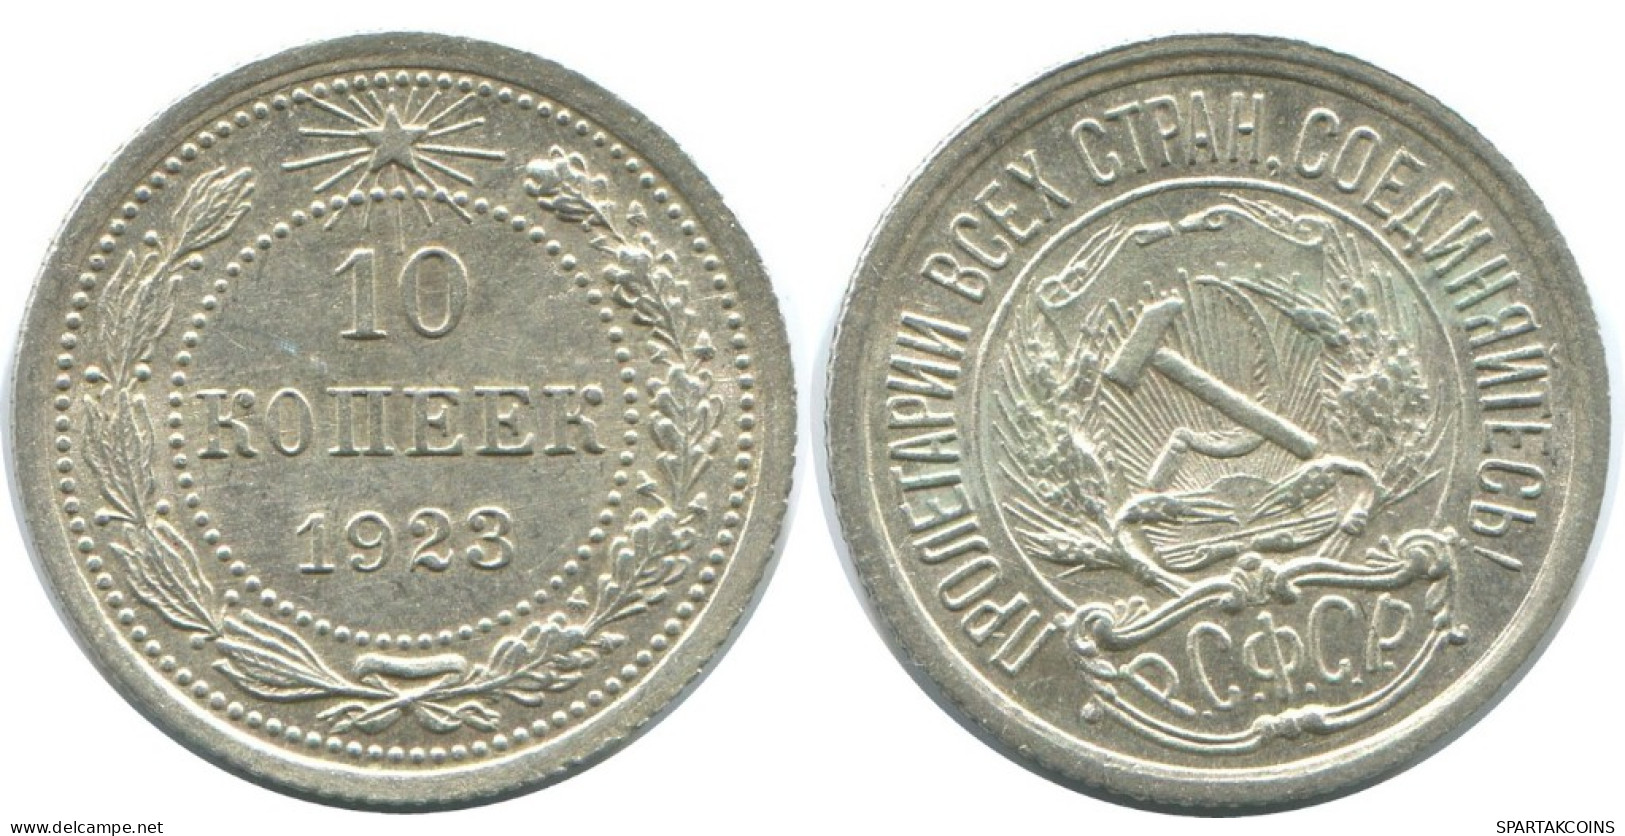 10 KOPEKS 1923 RUSSLAND RUSSIA RSFSR SILBER Münze HIGH GRADE #AE982.4.D.A - Russie